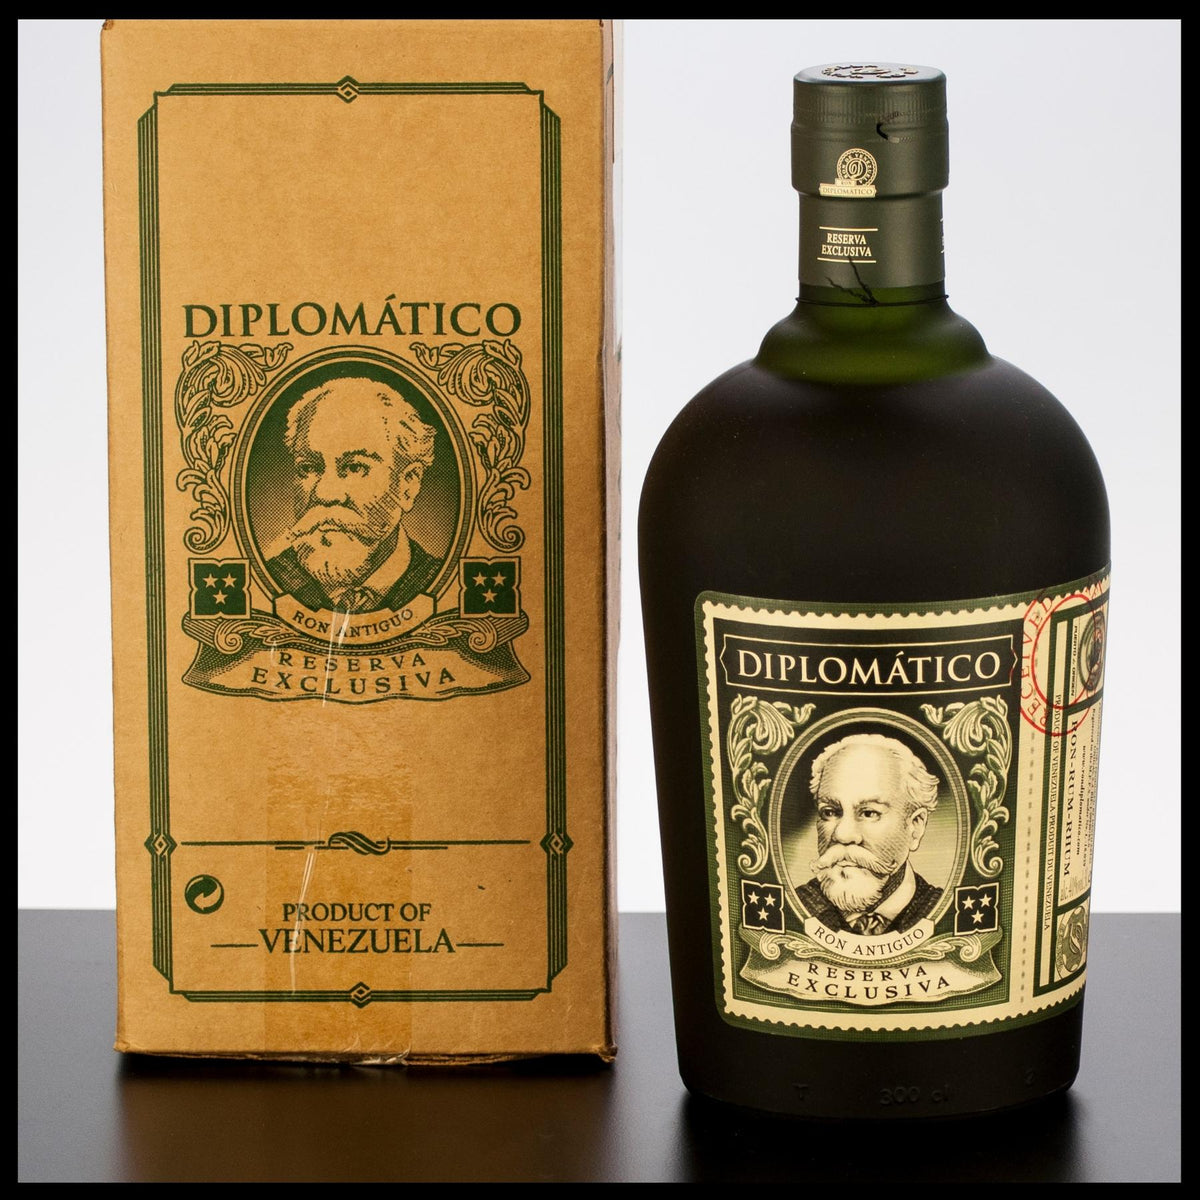 Diplomatico Reserva Exclusiva Rum 3L - 40% Vol. - Trinklusiv